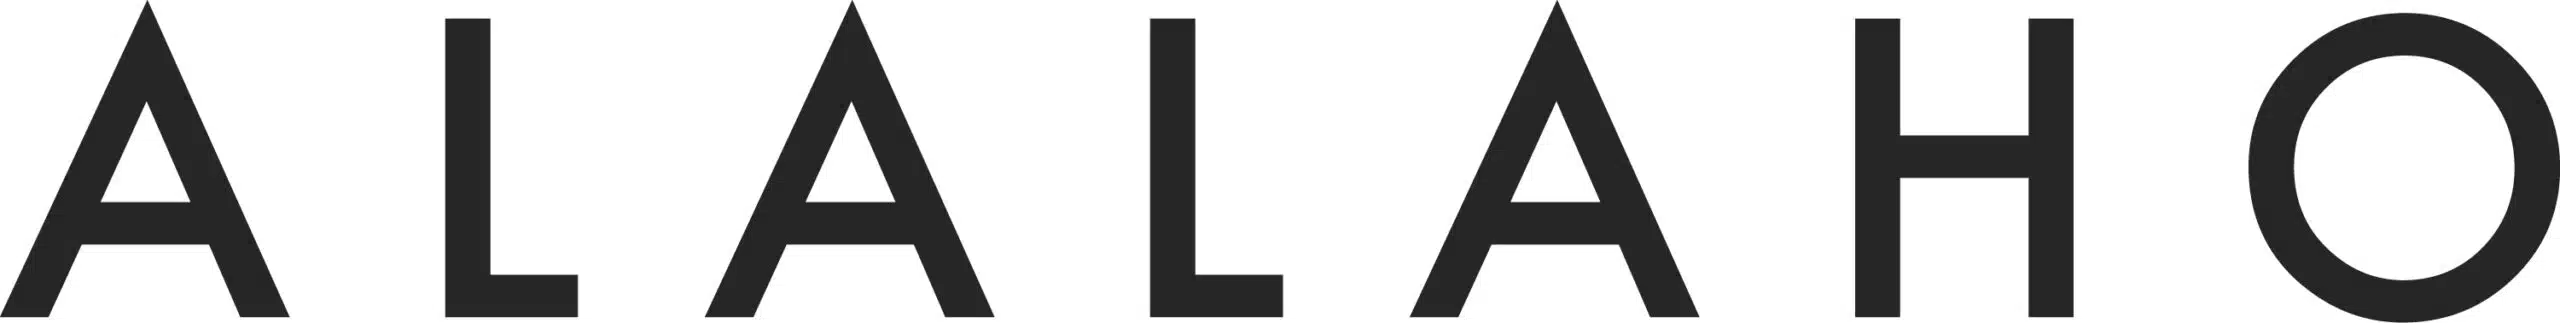 Alalaho logo